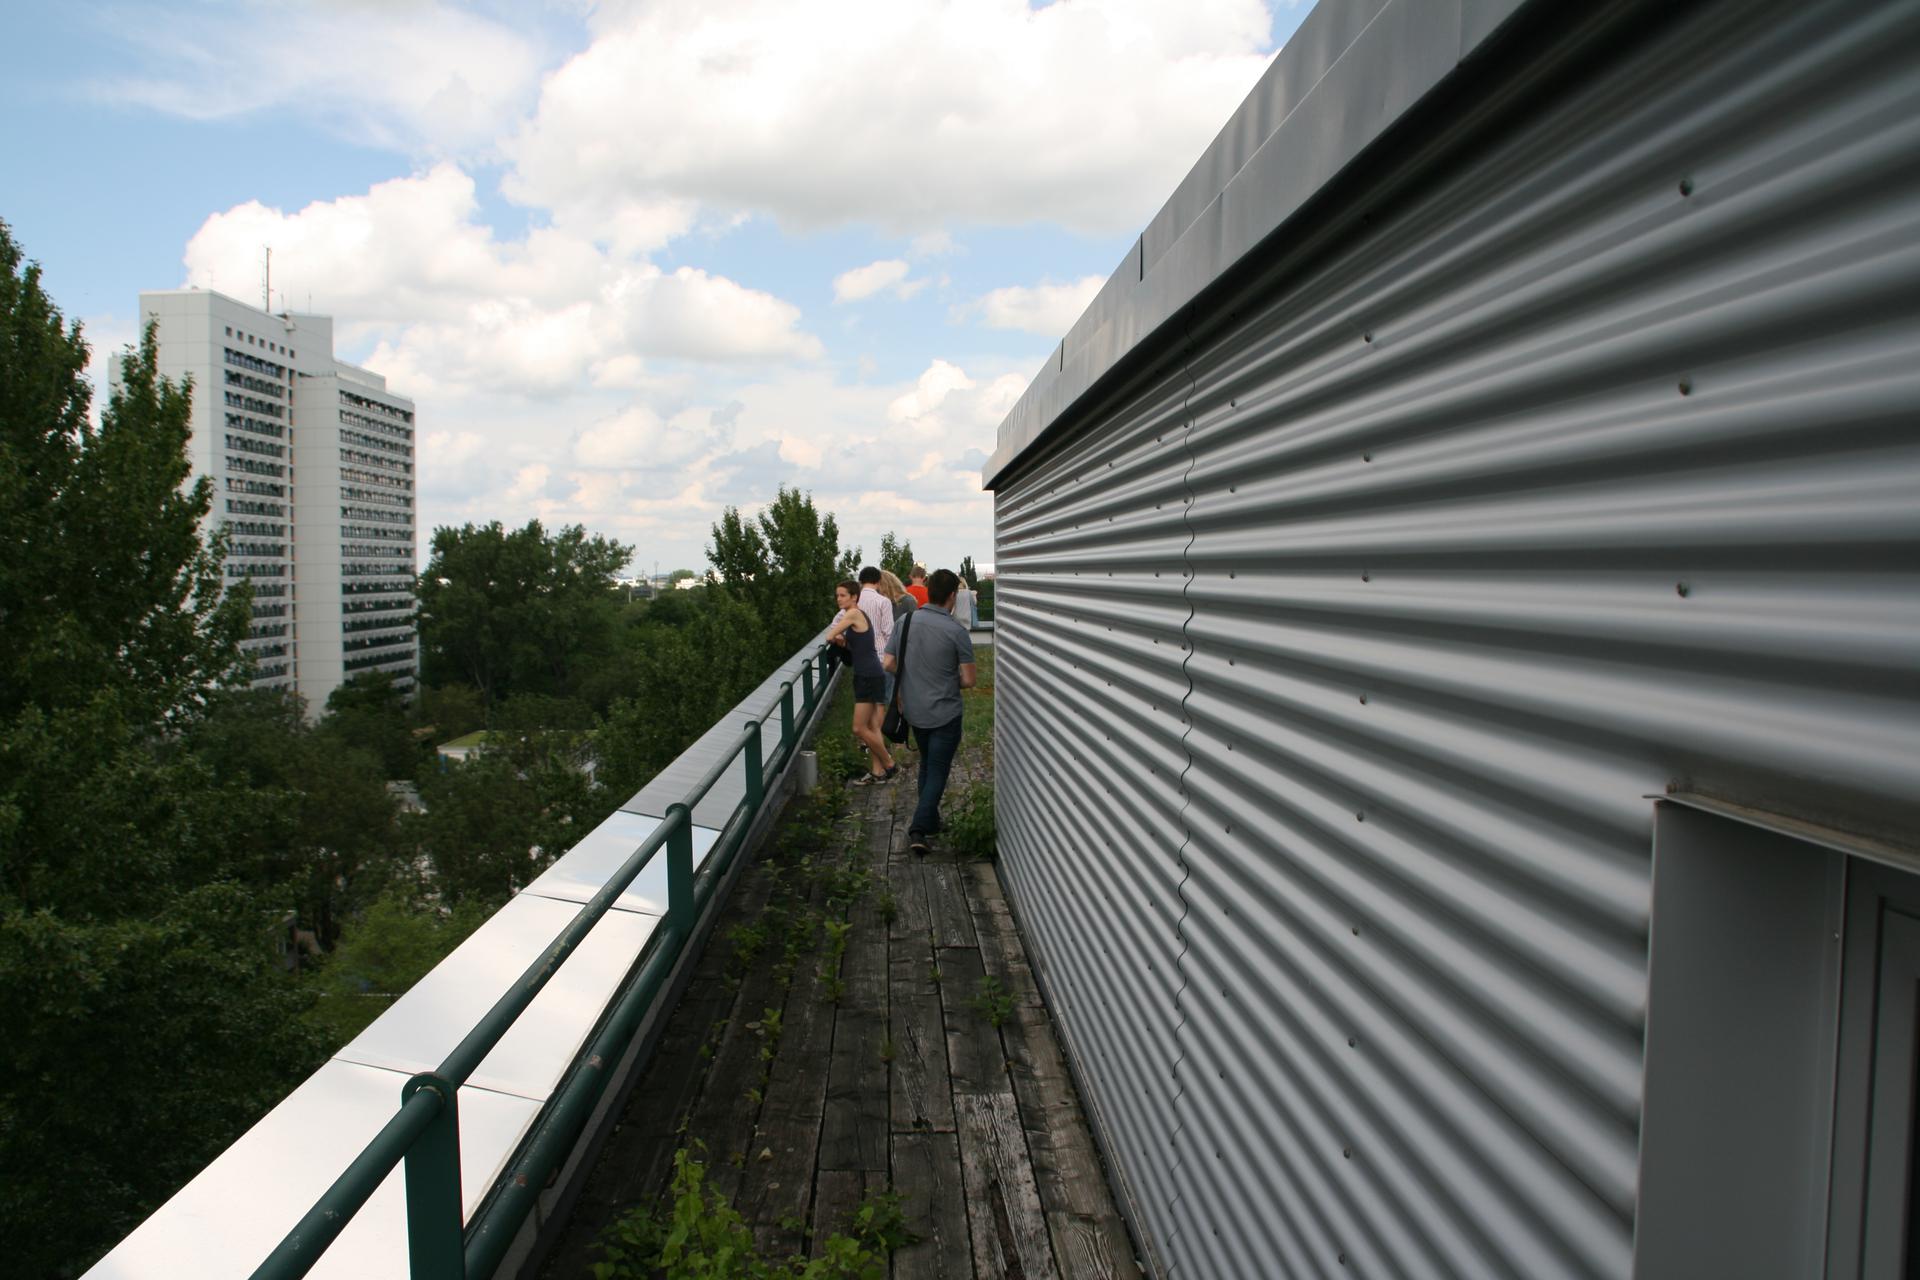 Ein etwa 1m breiter Weg aus Holzplanken führt am Wellblech verkleideten Aufbau auf die andere Seite des MKH-Daches. Im Hintergrund das HSH. Etwa 5 Personen.